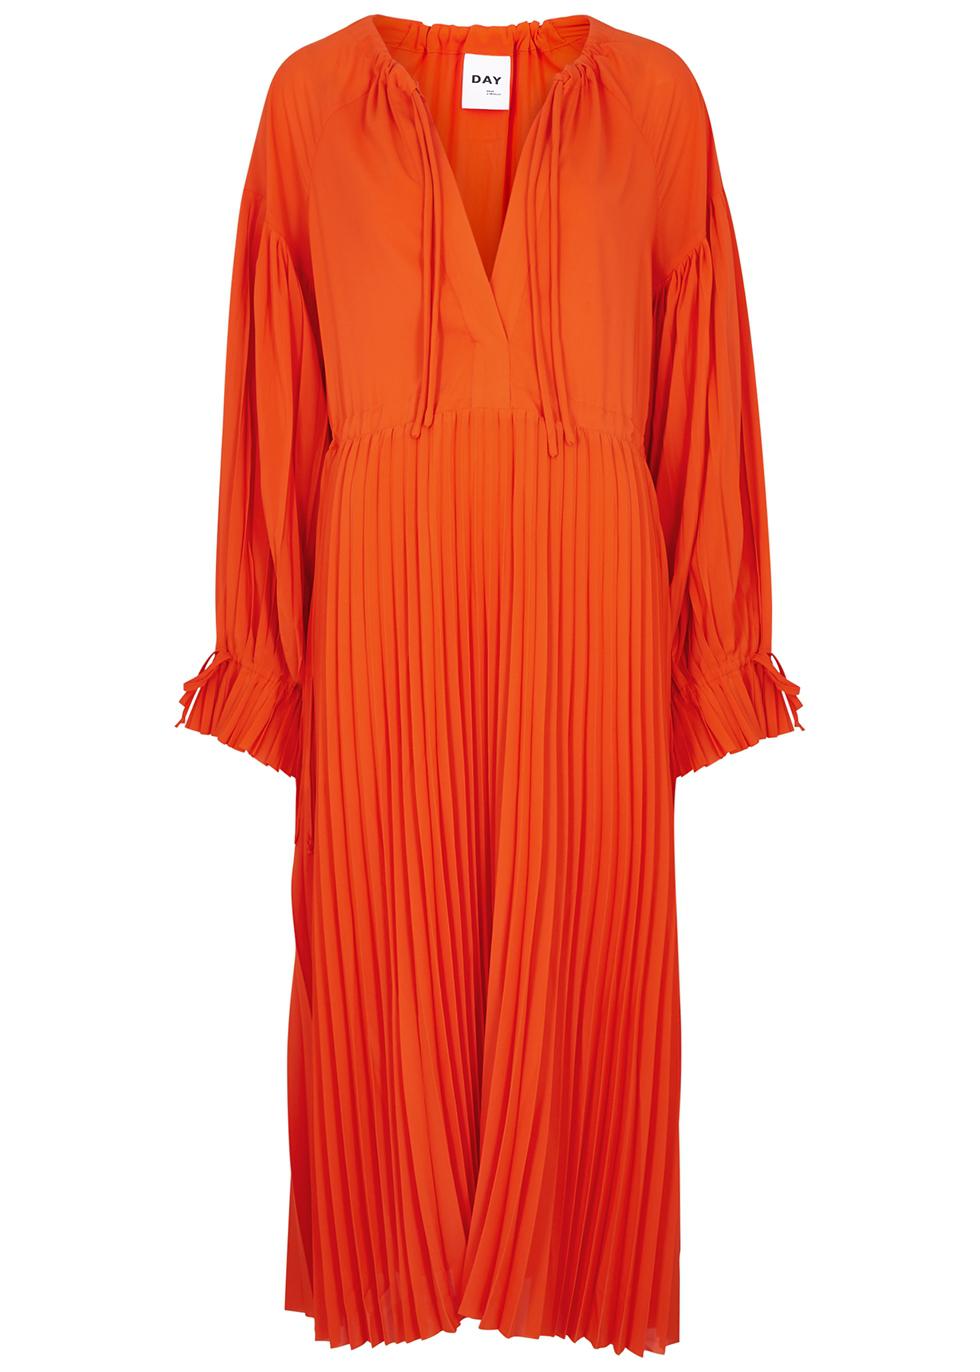 Leighton orange pleated midi dress by DAY BIRGER ET MIKKELSEN